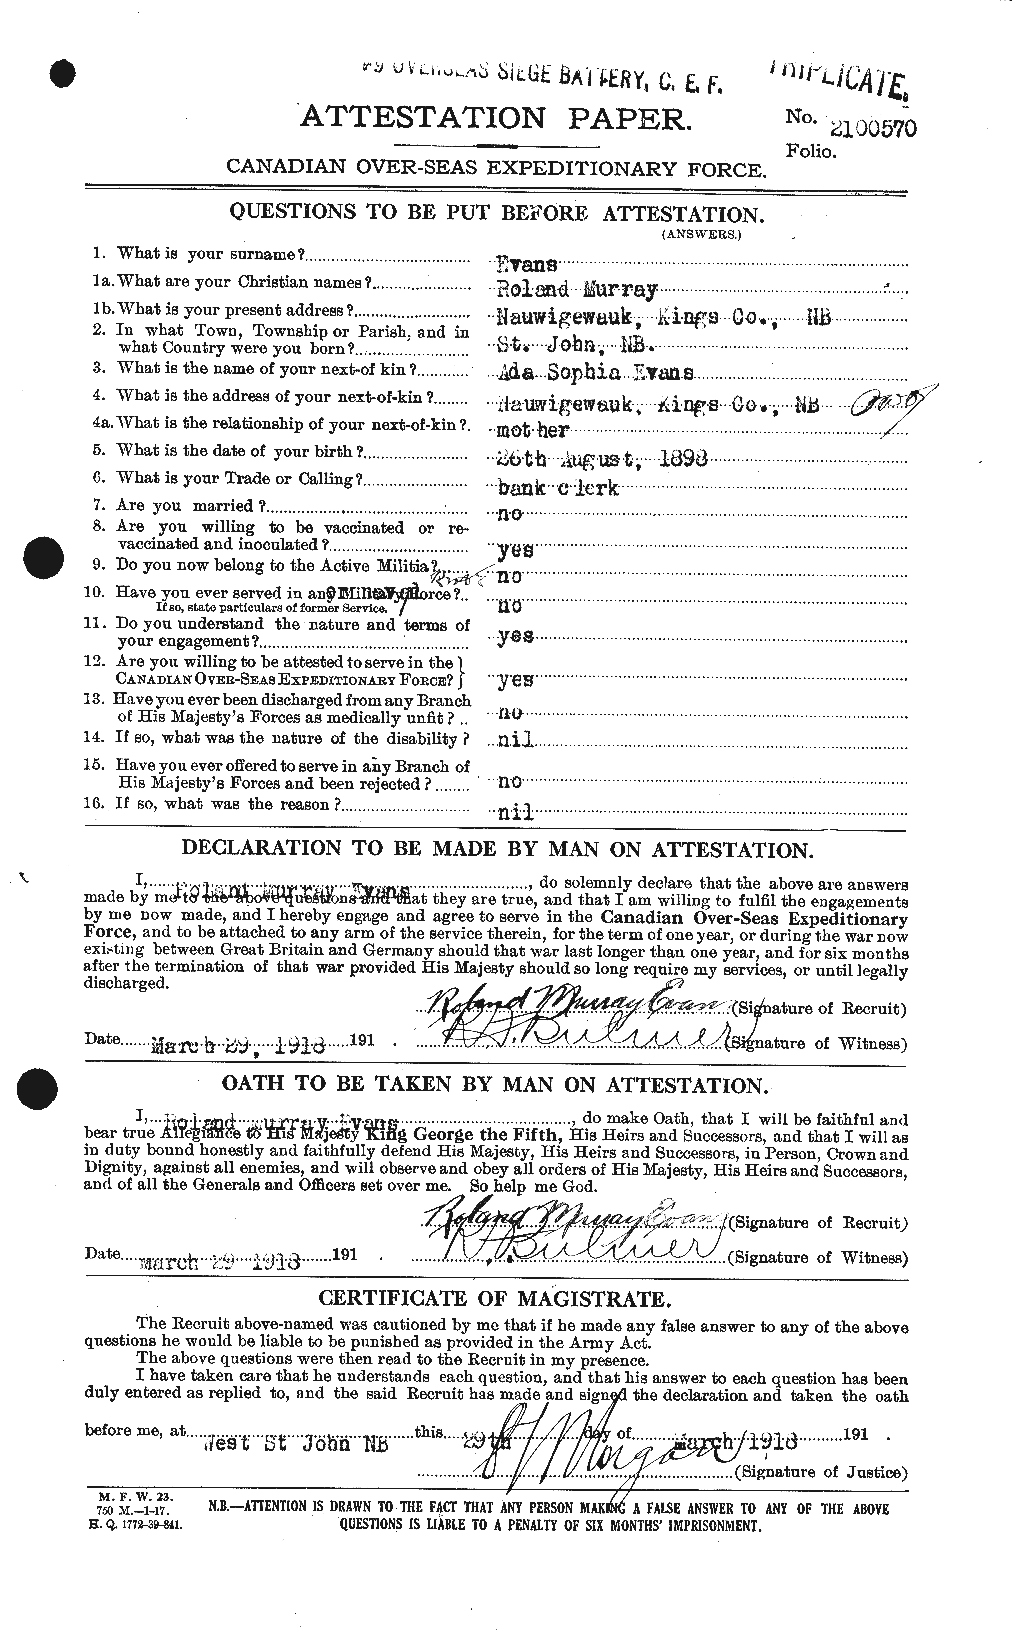 Dossiers du Personnel de la Première Guerre mondiale - CEC 313316a